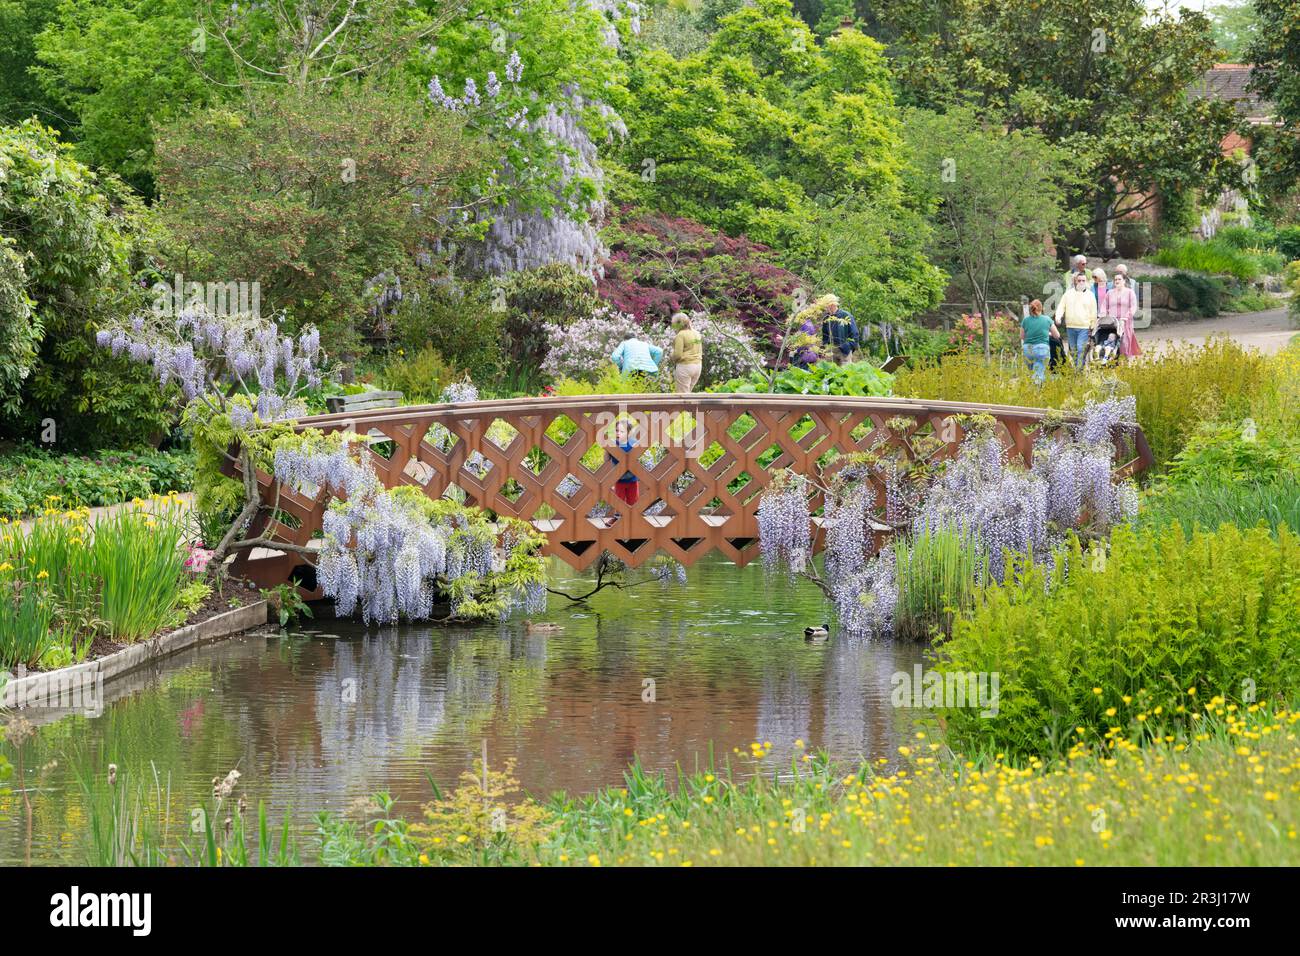 Wisteria Floribunda covering a metal foot bridge at RHS Wisley Gardens, Surrey, England Stock Photo